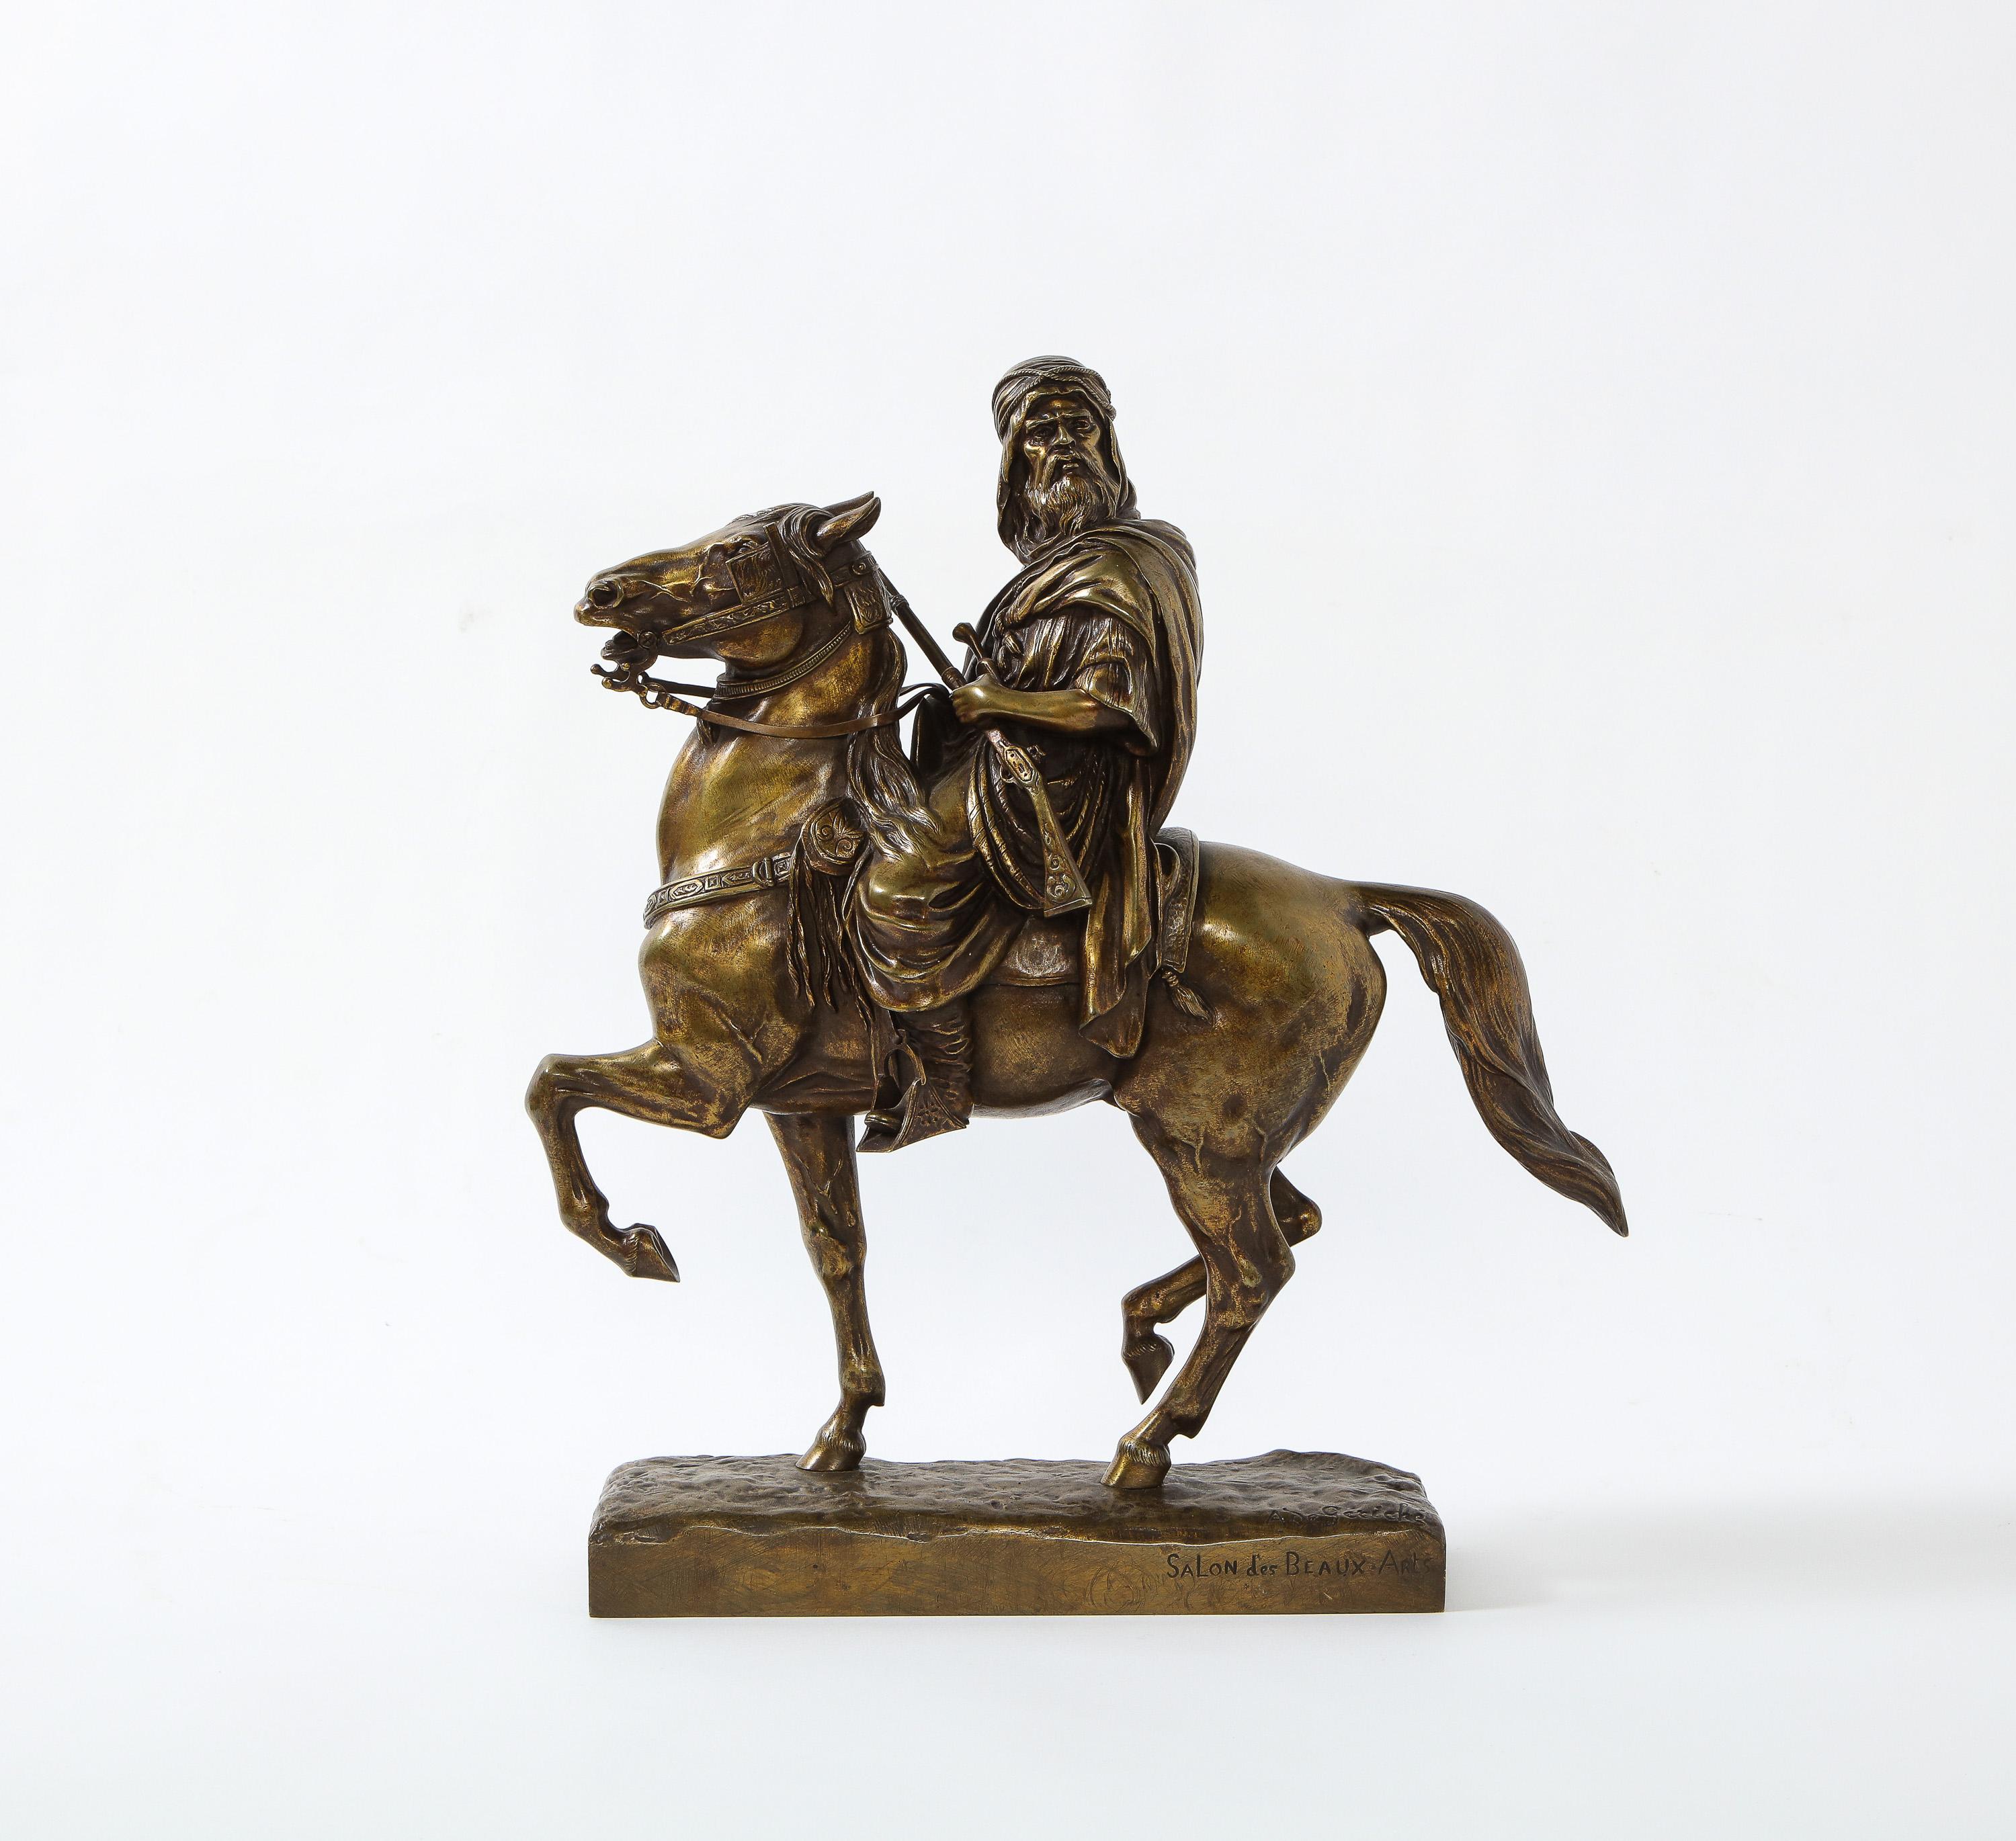 Napoleon III French Gilt Bronze Sculpture of an Arab Riding a Horse, A. De Gericke